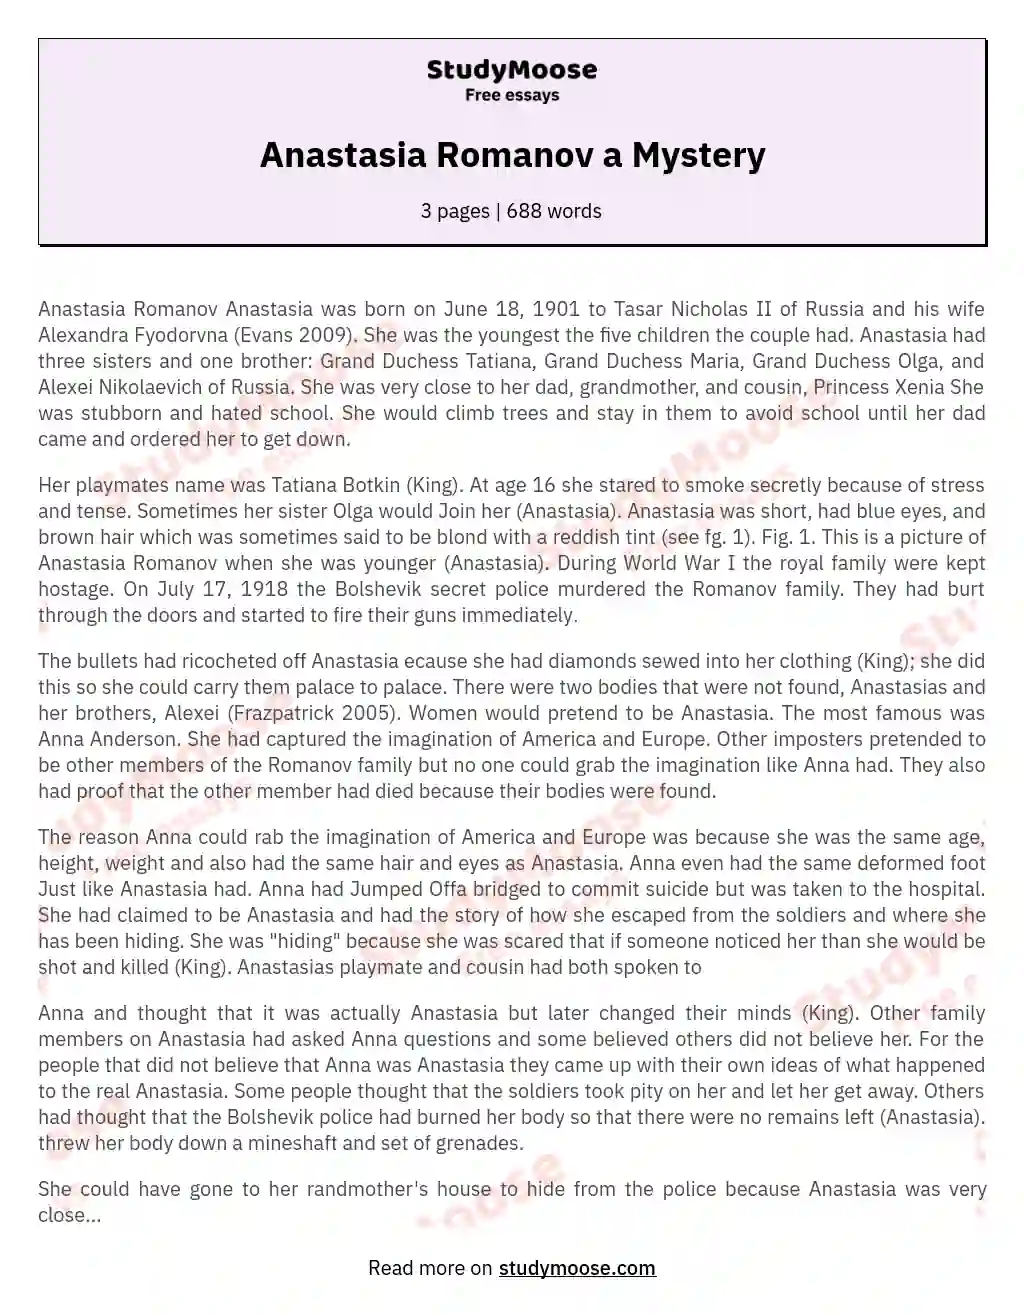 Anastasia Romanov a Mystery